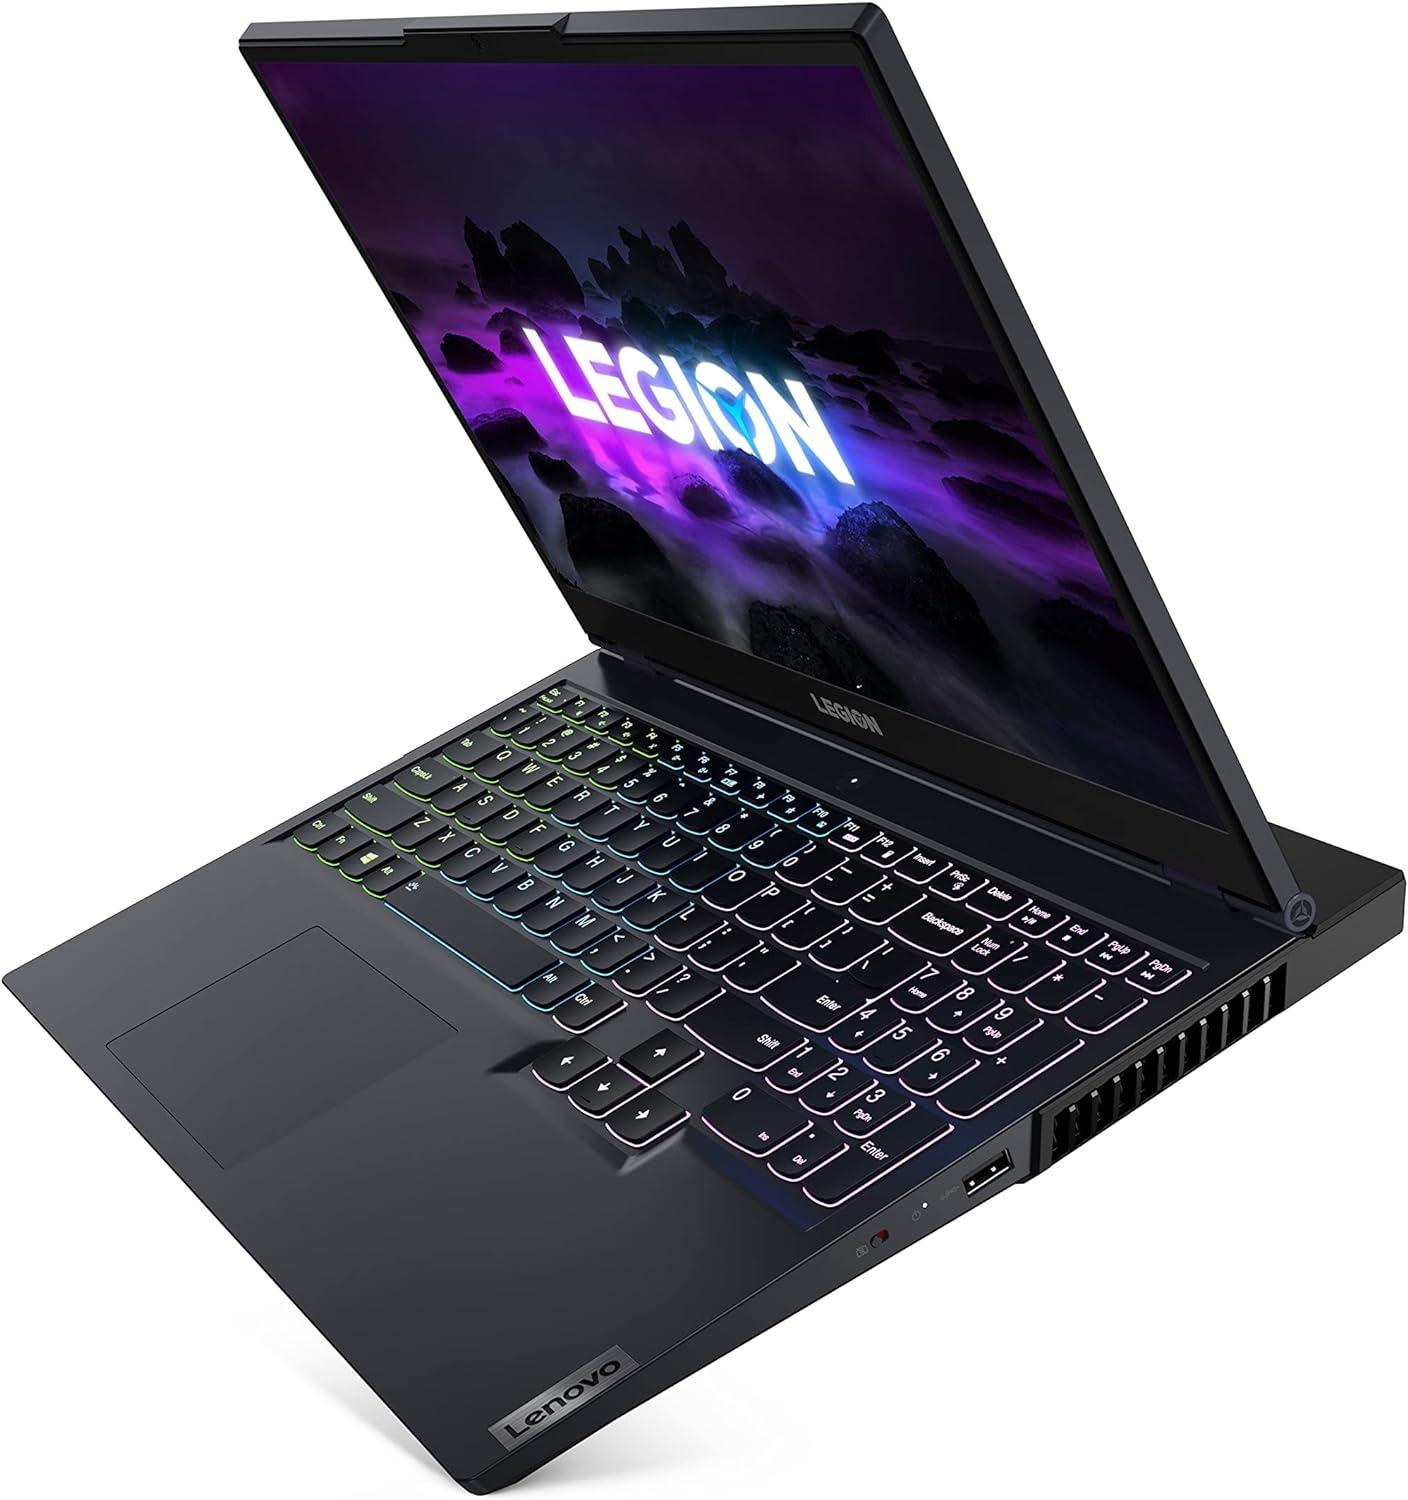 LENOVO LEGION 5 GAMING Laptop  AMD RYZEN 5 5600H, 8GB, 512GB SSD, NVIDIA  GeForce RTX 3050, 15.6'' FHD